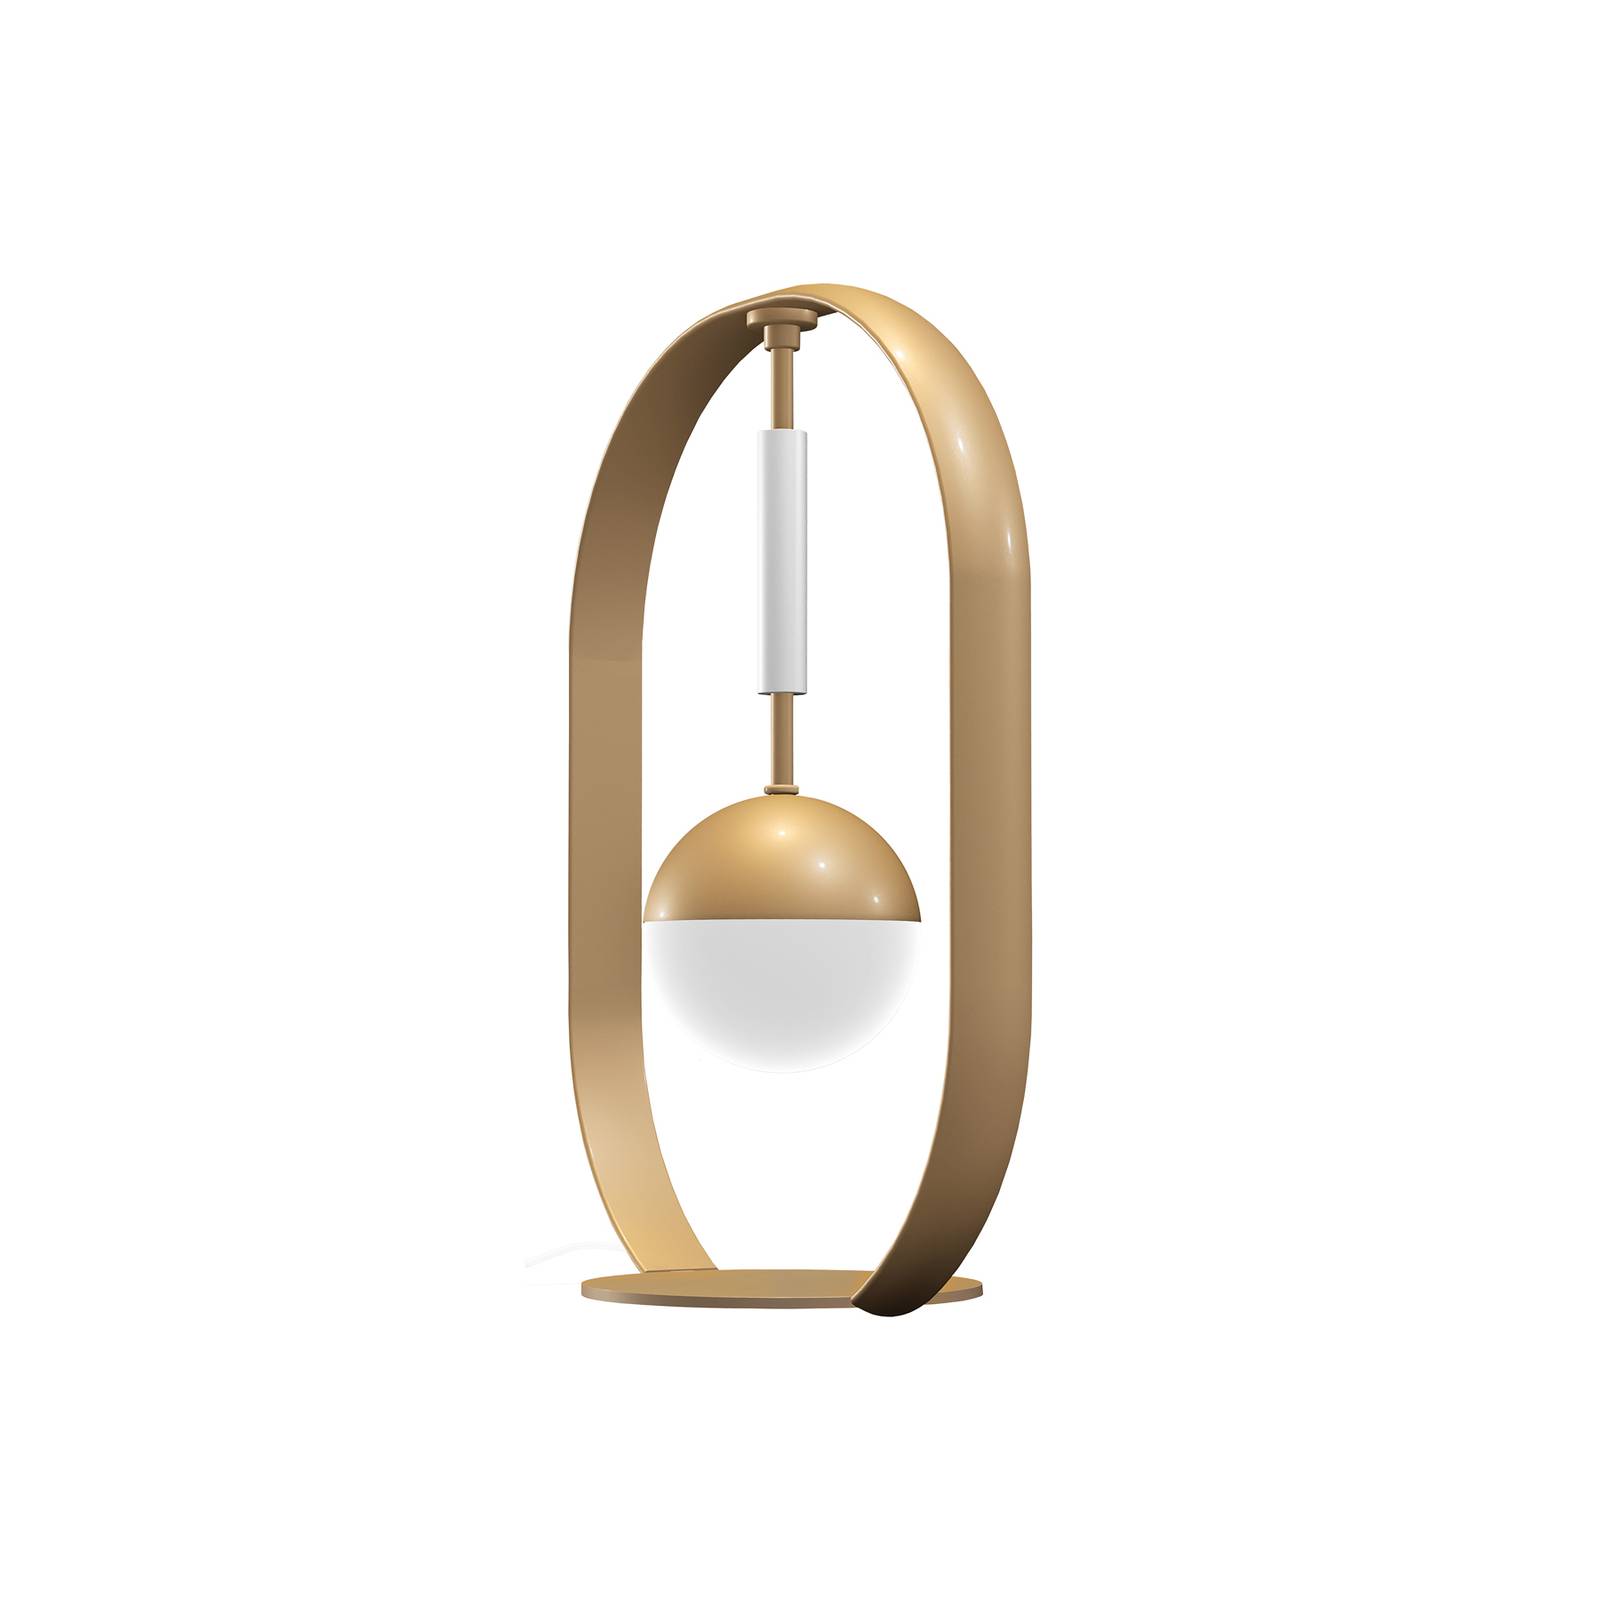 Aluminor Tamara Design bordslampa guld/vit